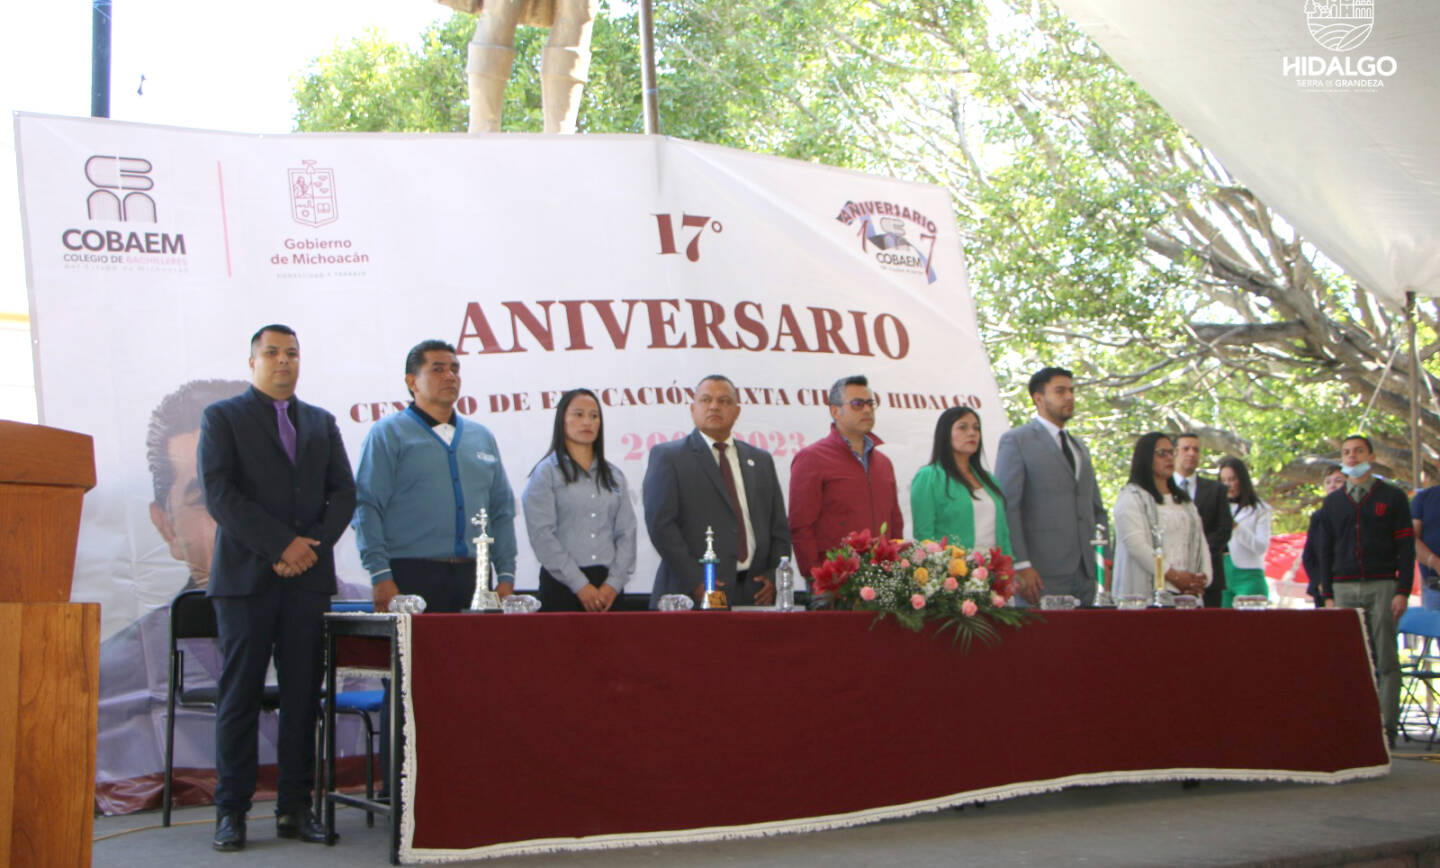 17 Aniversario del CABAEM, Ciudad Hidalgo